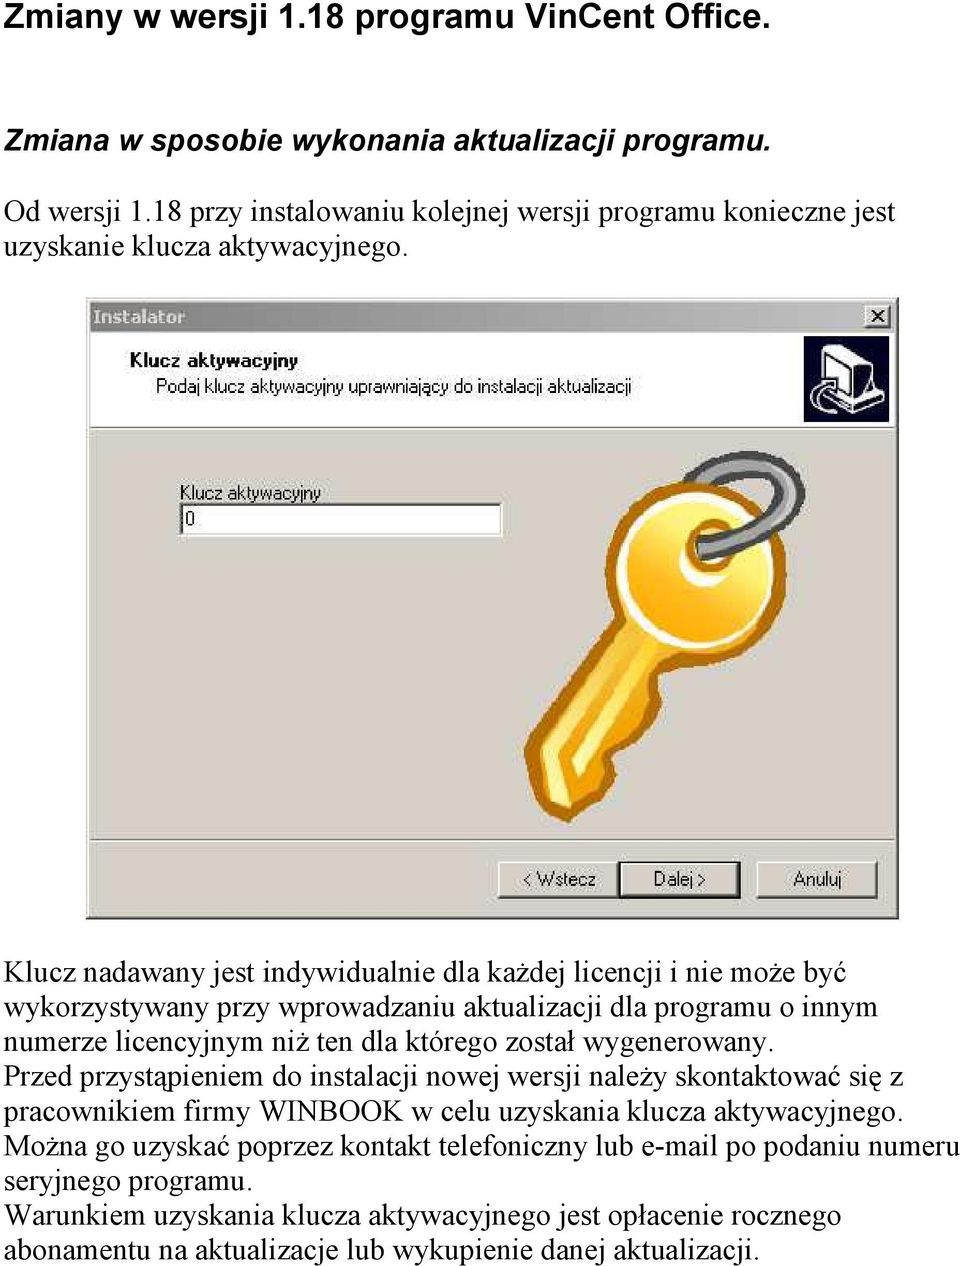 Klucz nadawany jest indywidualnie dla kaŝdej licencji i nie moŝe być wykorzystywany przy wprowadzaniu aktualizacji dla programu o innym numerze licencyjnym niŝ ten dla którego został